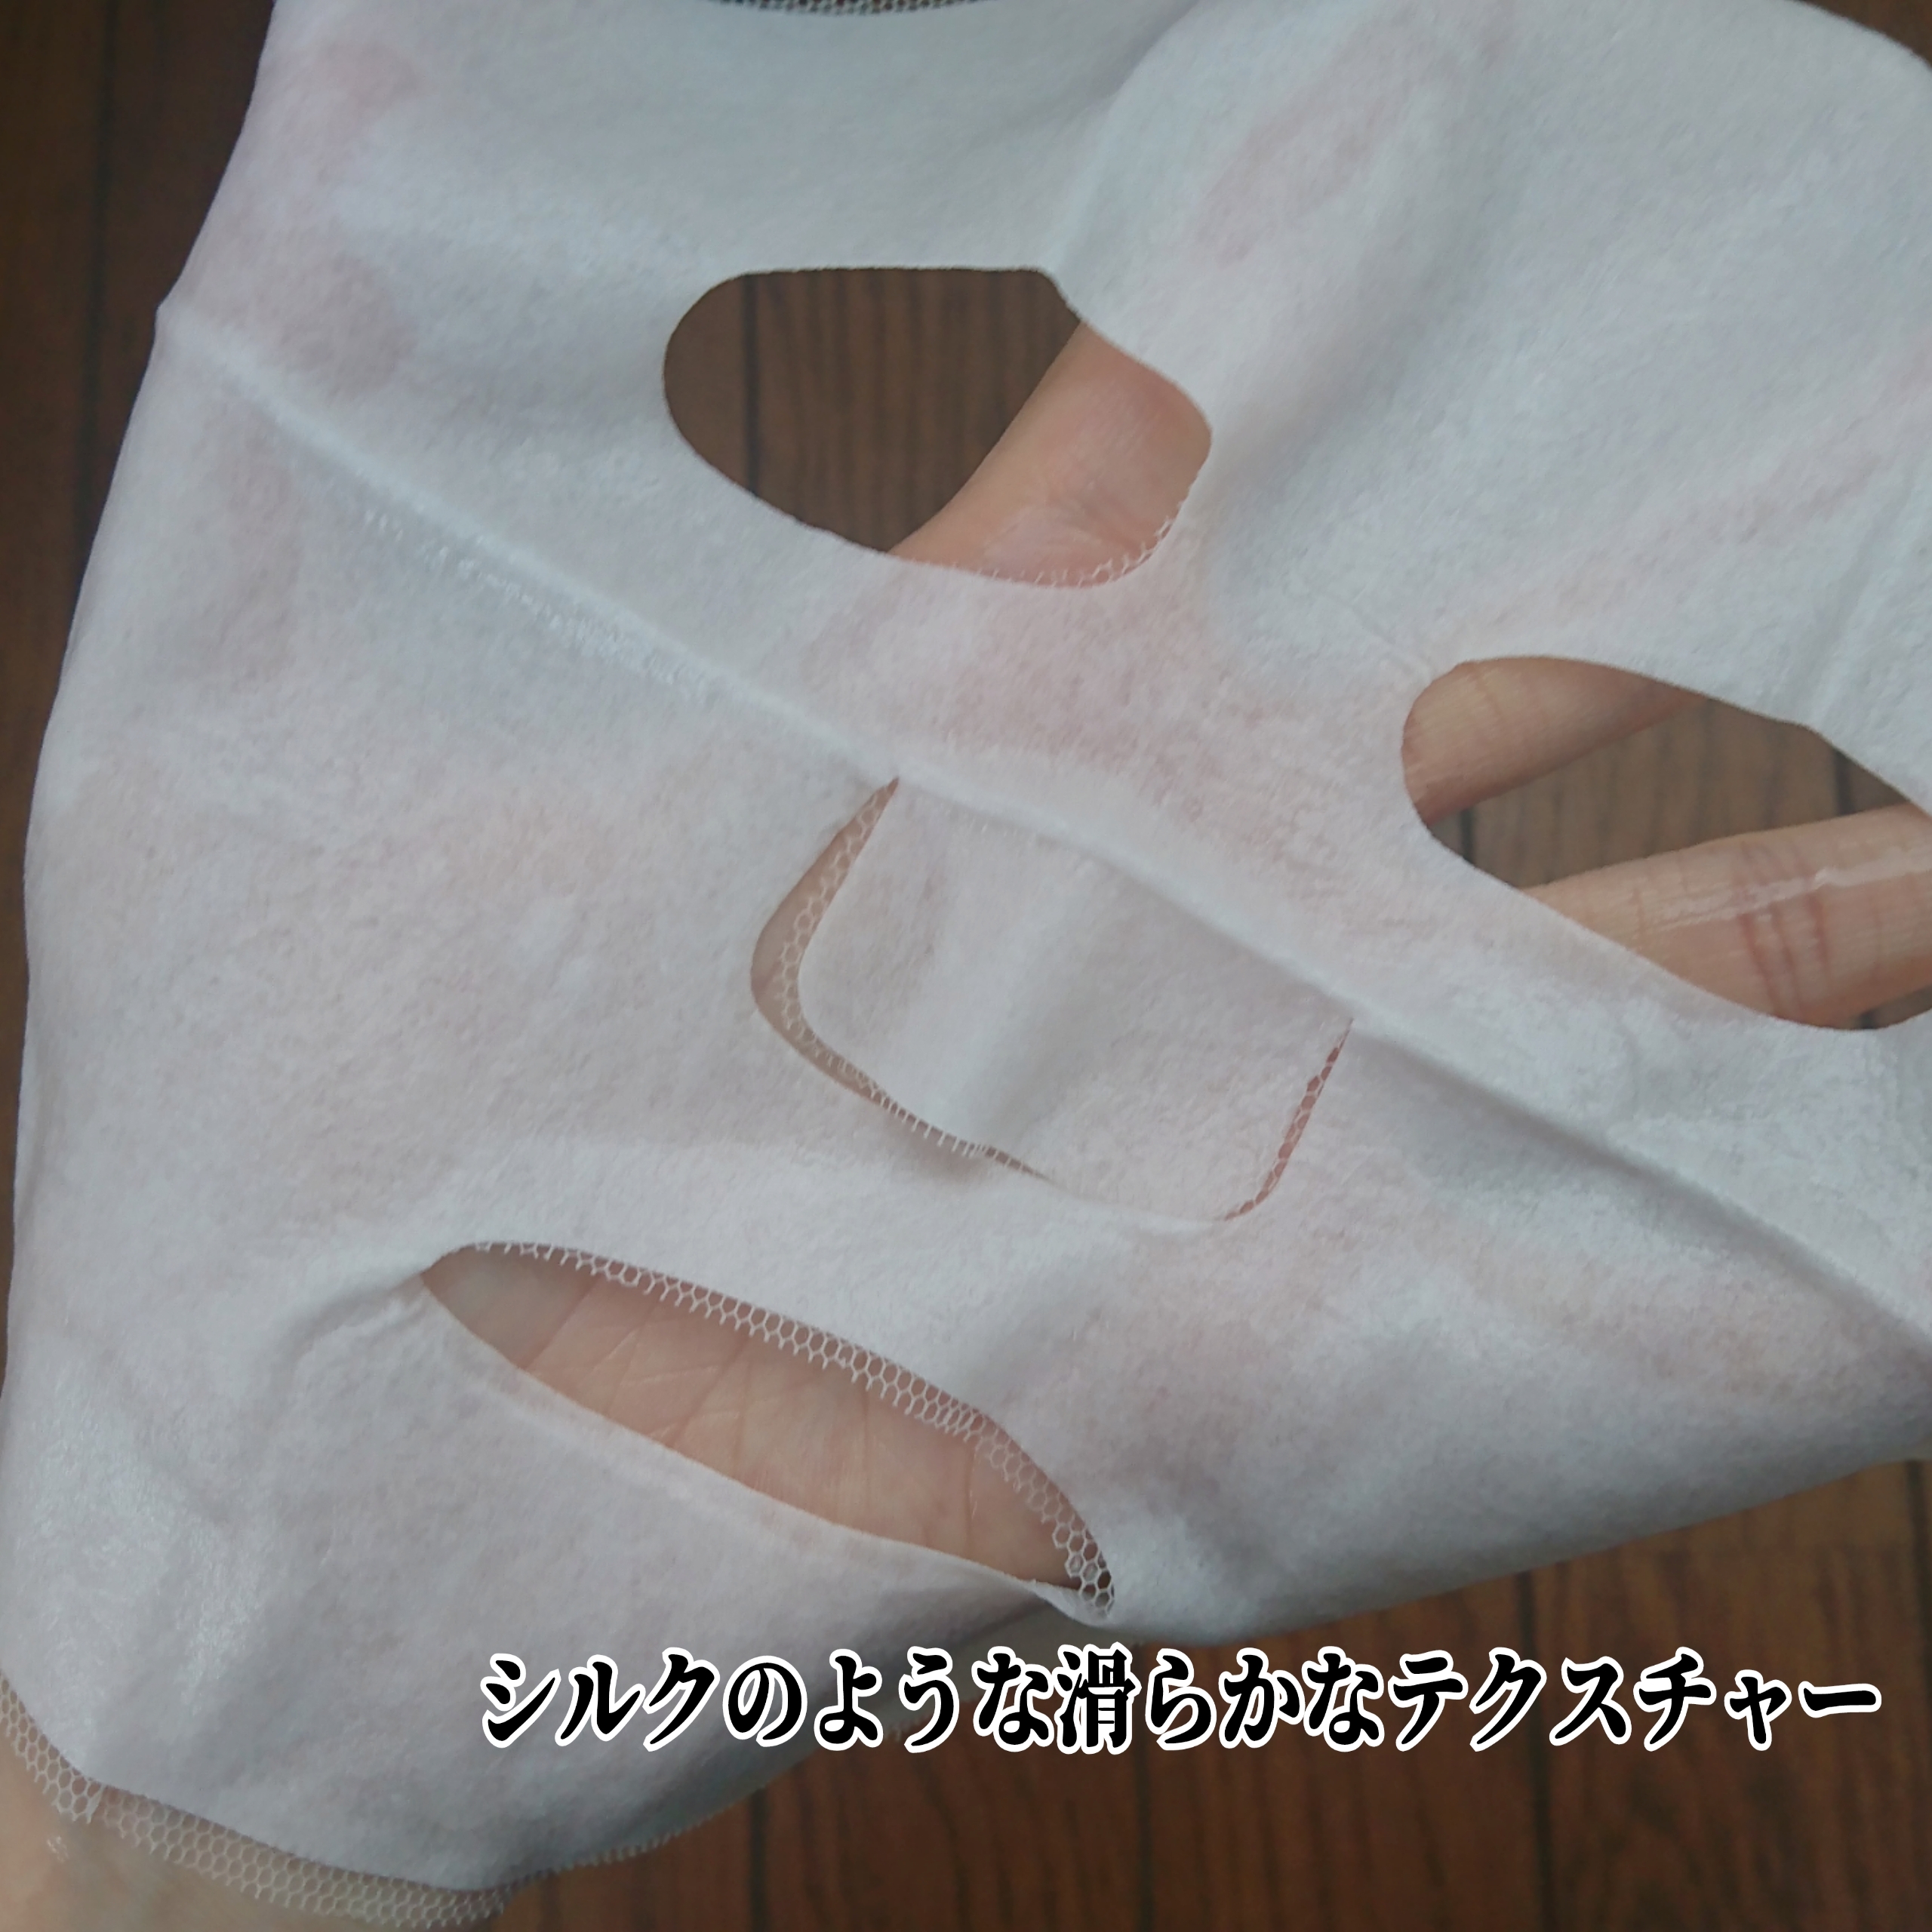 セッコク蘭エイジングケア・マスクαを使ったYuKaRi♡さんのクチコミ画像7